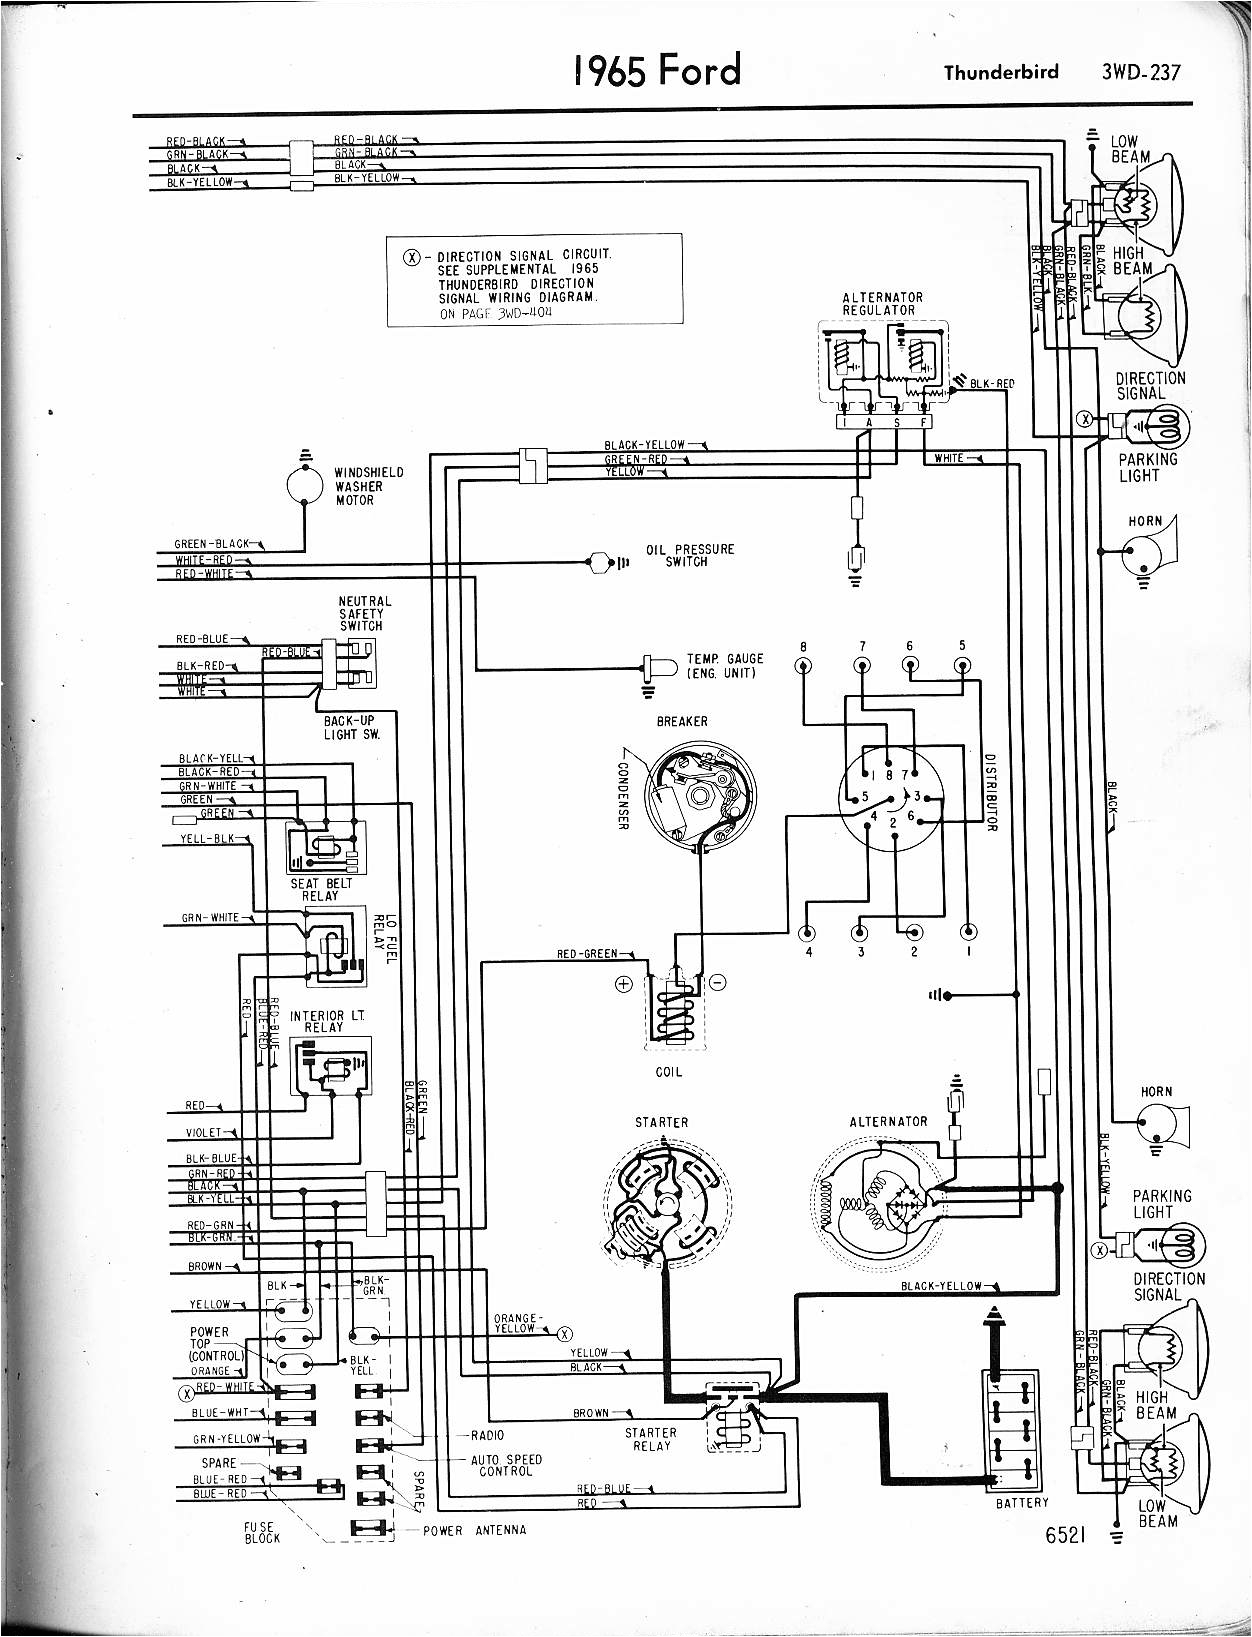 1965 Mustang Fuel Gauge Wiring Diagram Wrg 7916 1965 Econoline Wiring Diagram